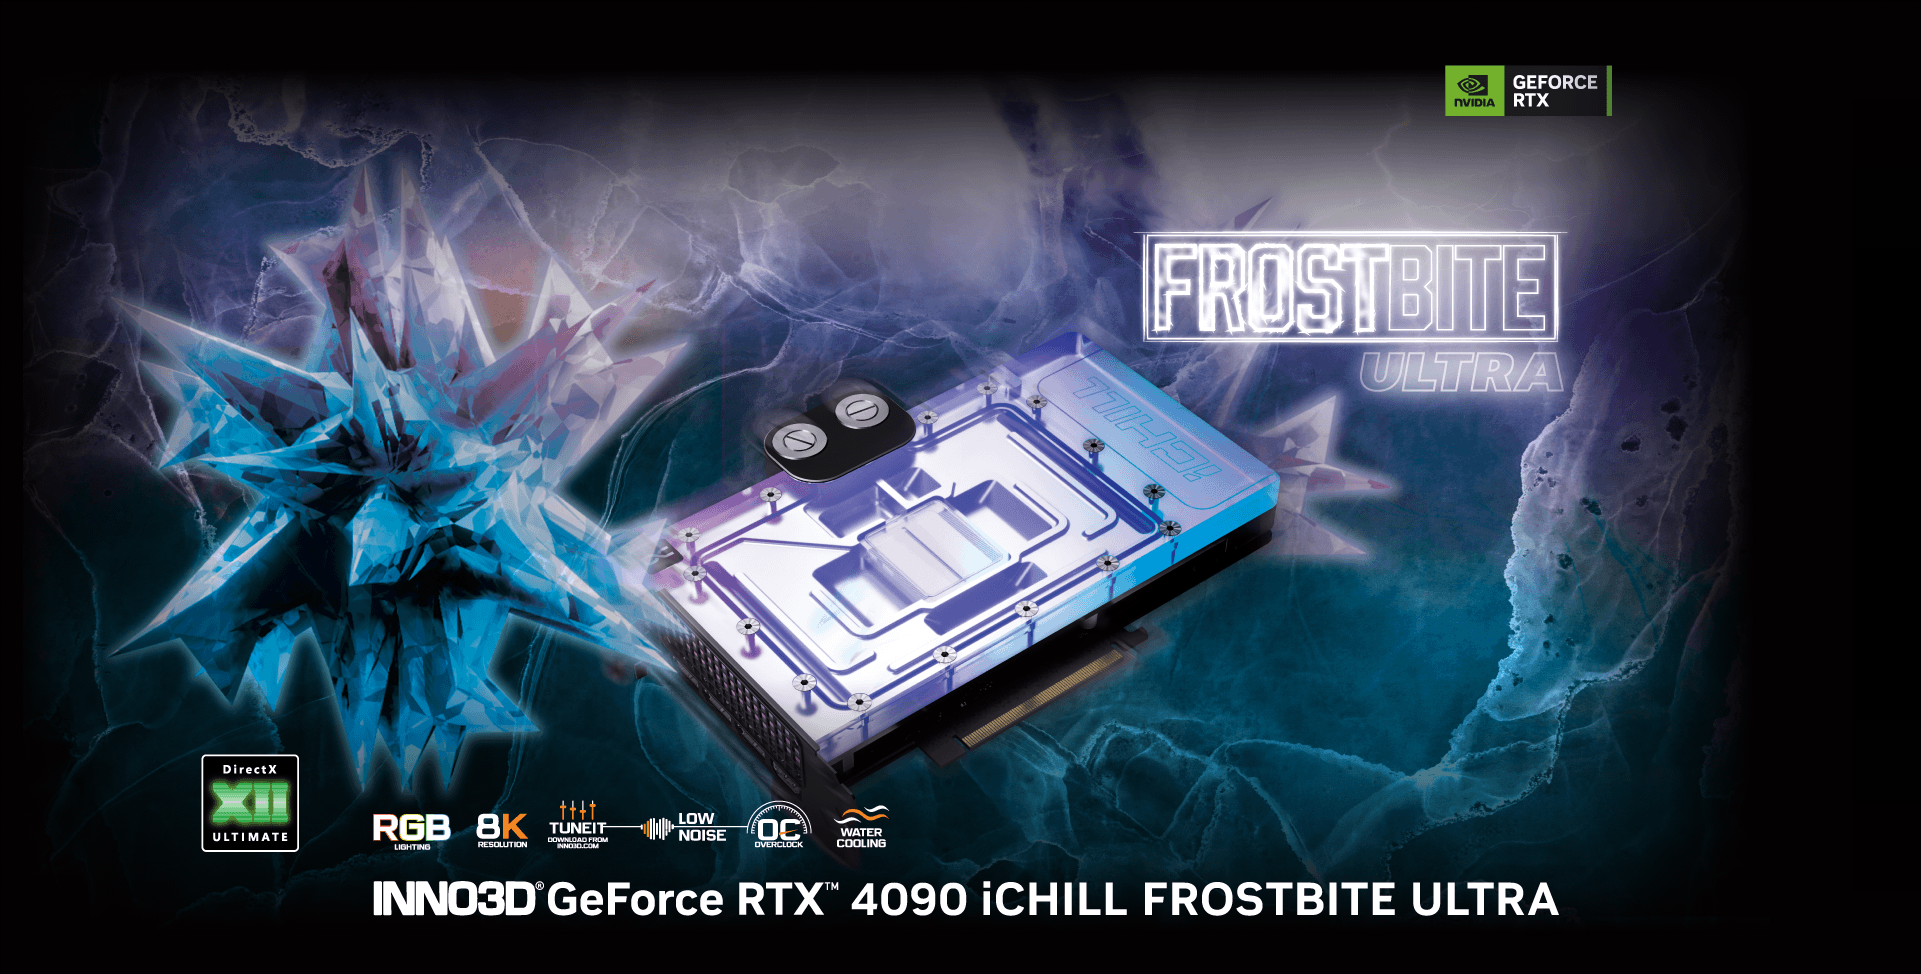 INNO3D GeForce RTX 4090 iCHILL FROSTBITEで究極の冷却体験を